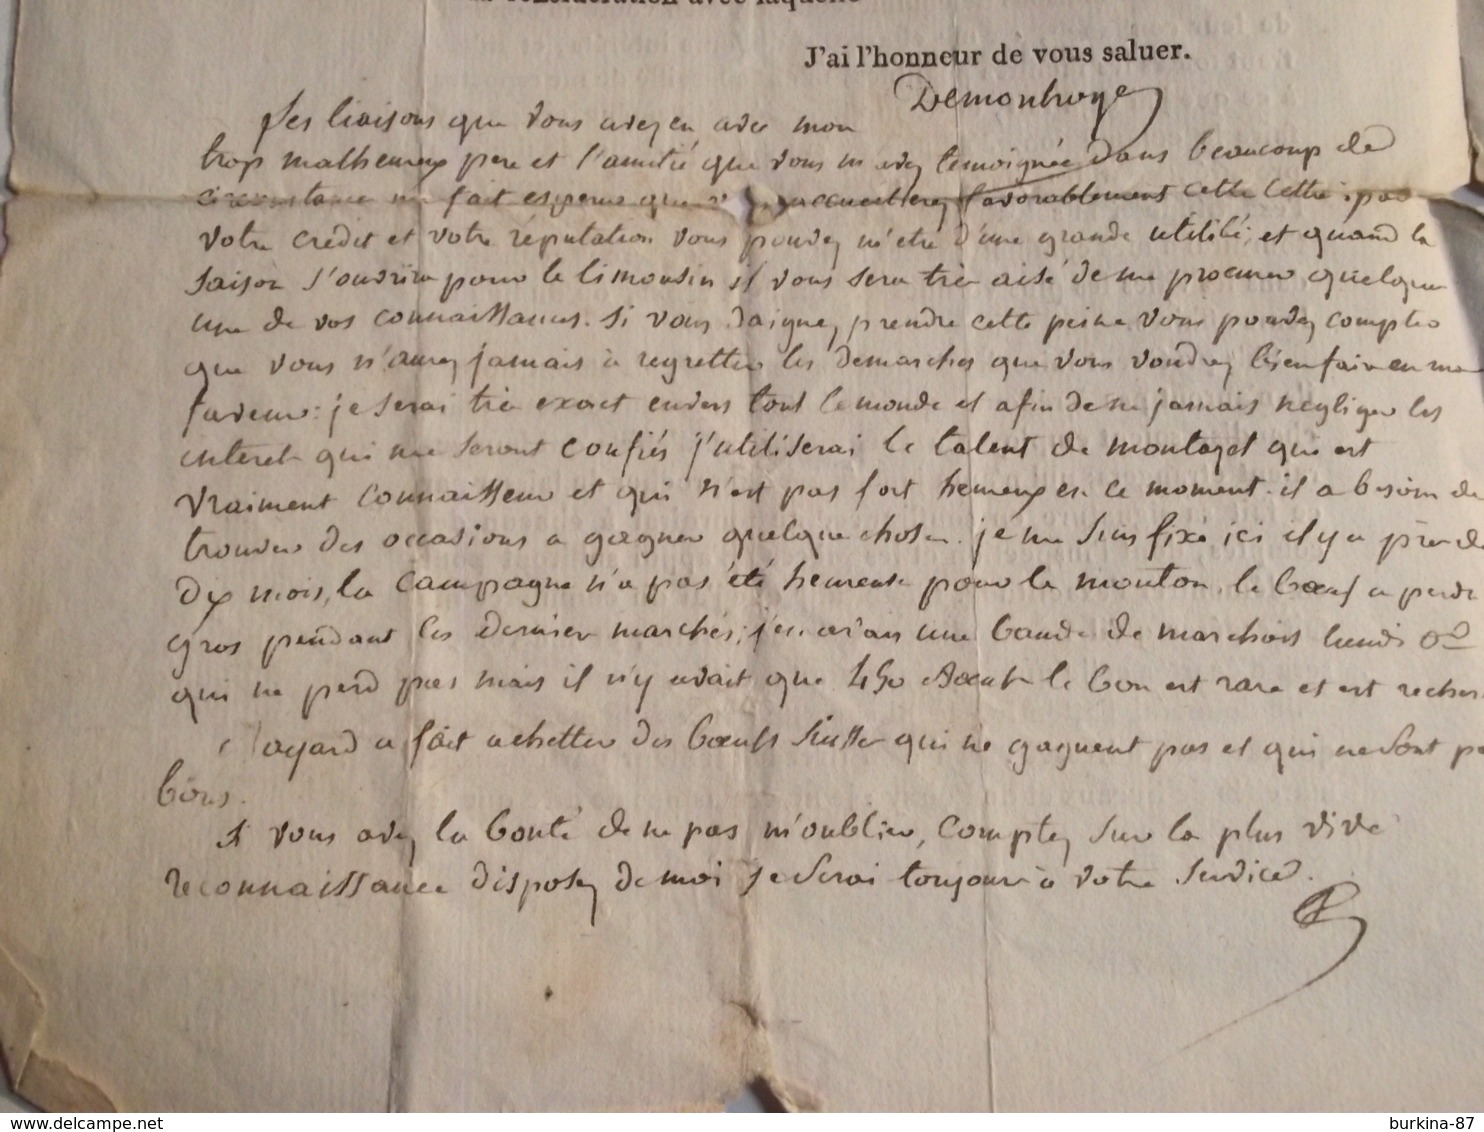 Courrier Publicitaire, 1814, lettre de sollicitation vente animaux divers